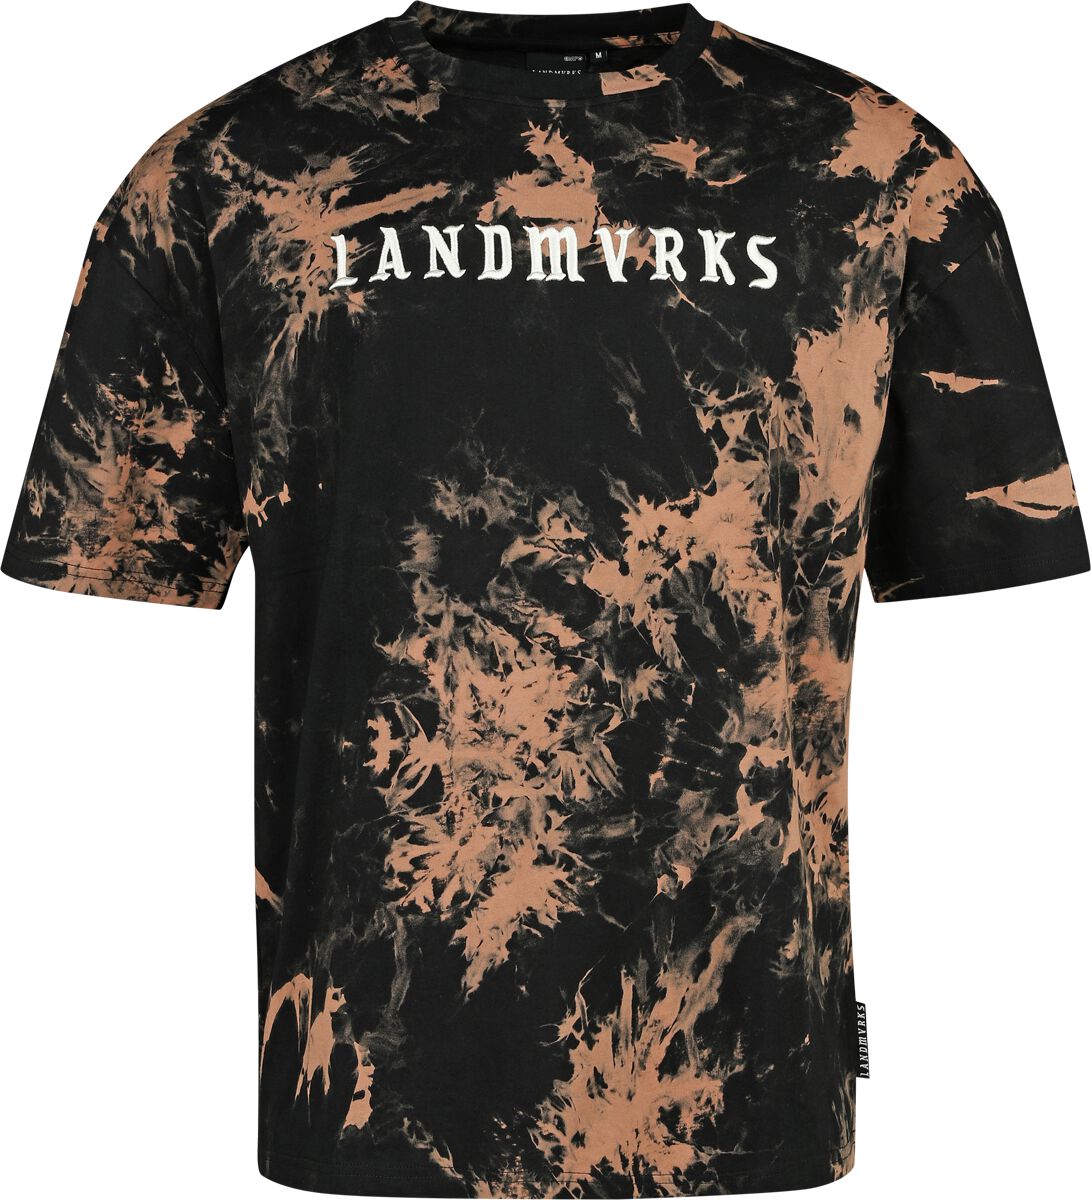 Landmvrks T-Shirt - EMP Signature Collection - S bis 3XL - für Männer - Größe XL - schwarz/braun  - EMP exklusives Merchandise!